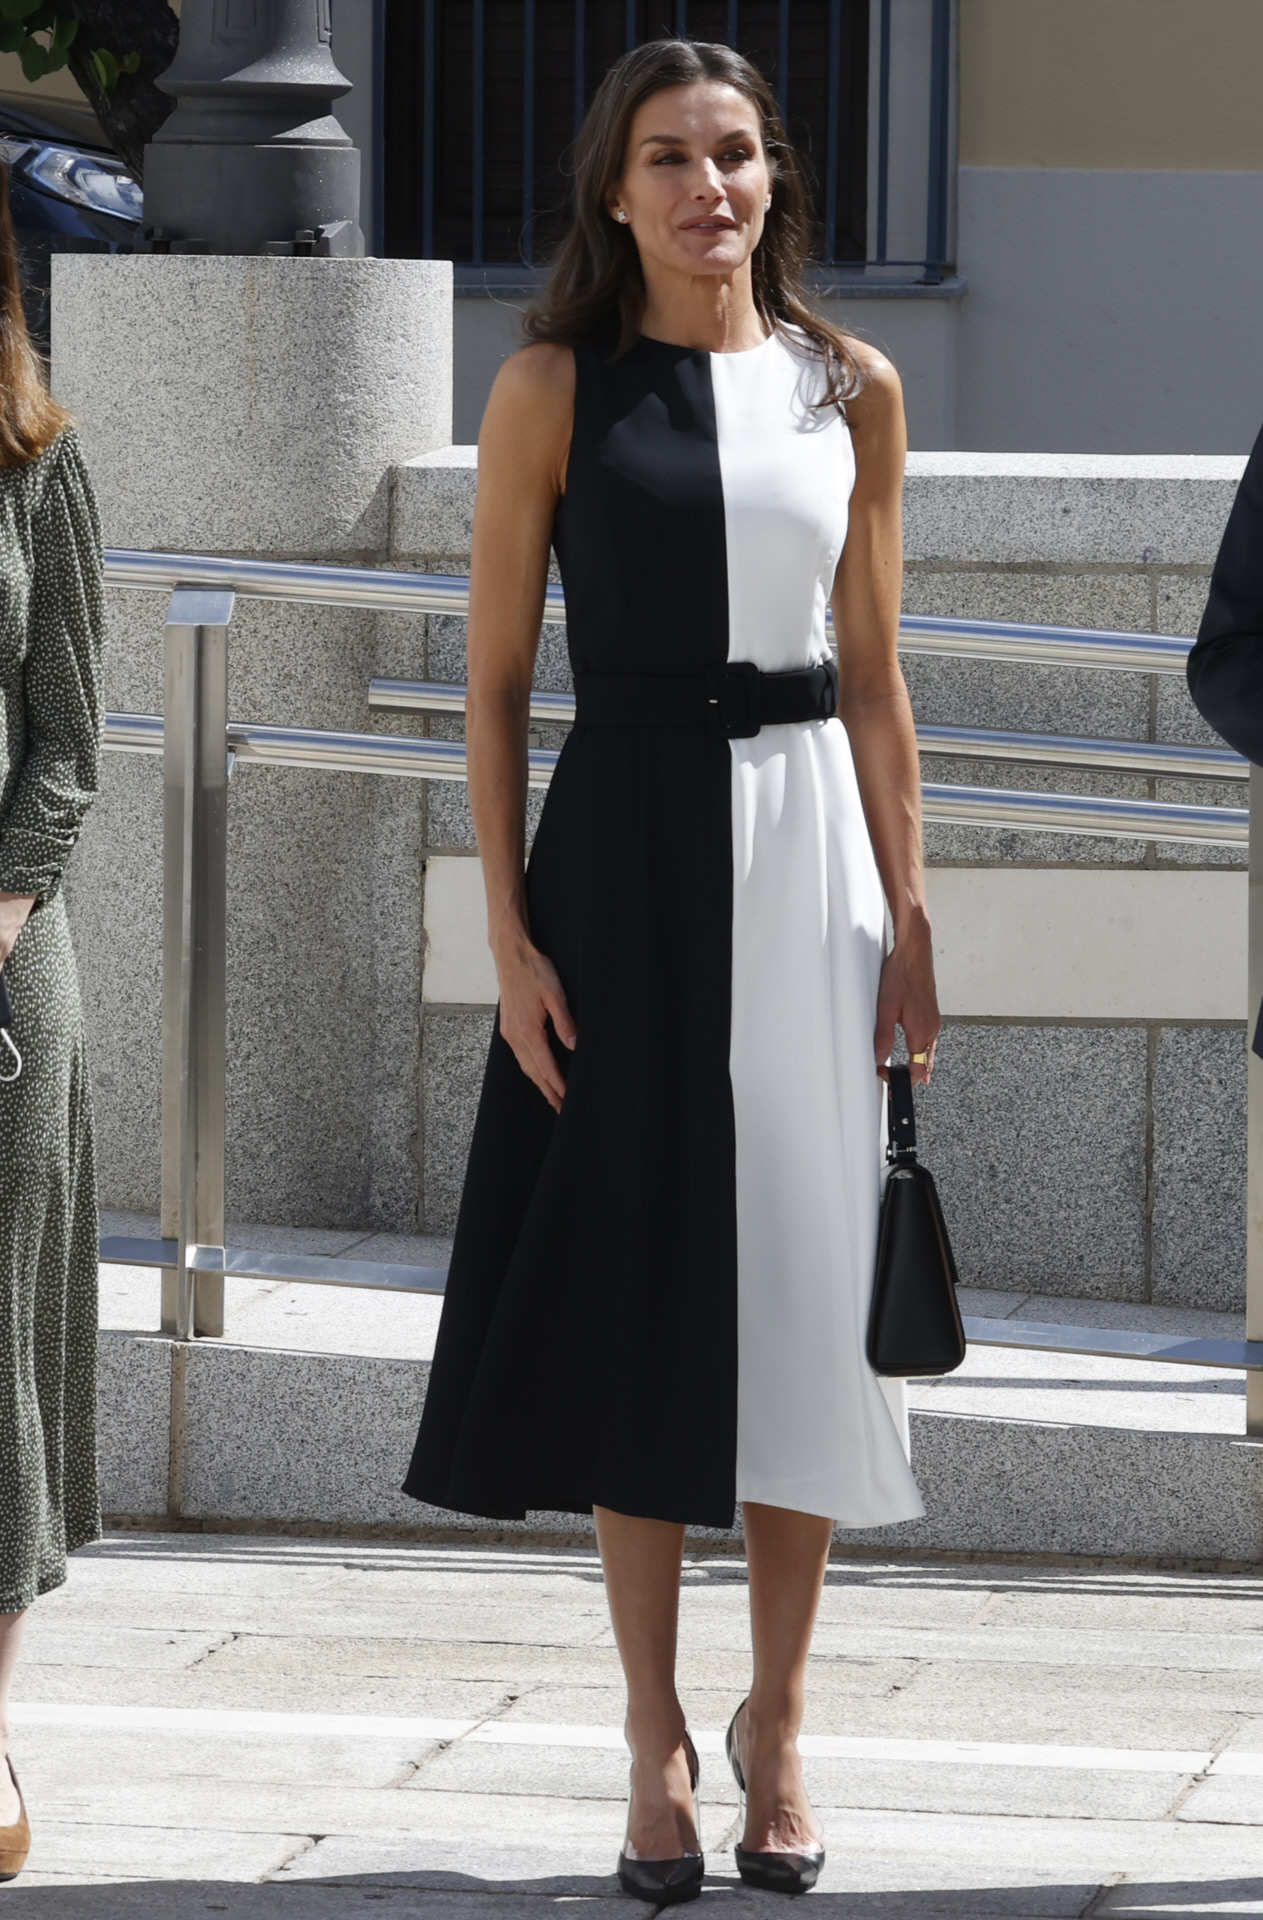 Querido Marcha mala asistencia La reina Letizia estrena el vestido blanco y negro de Mango más elegante |  Telva.com